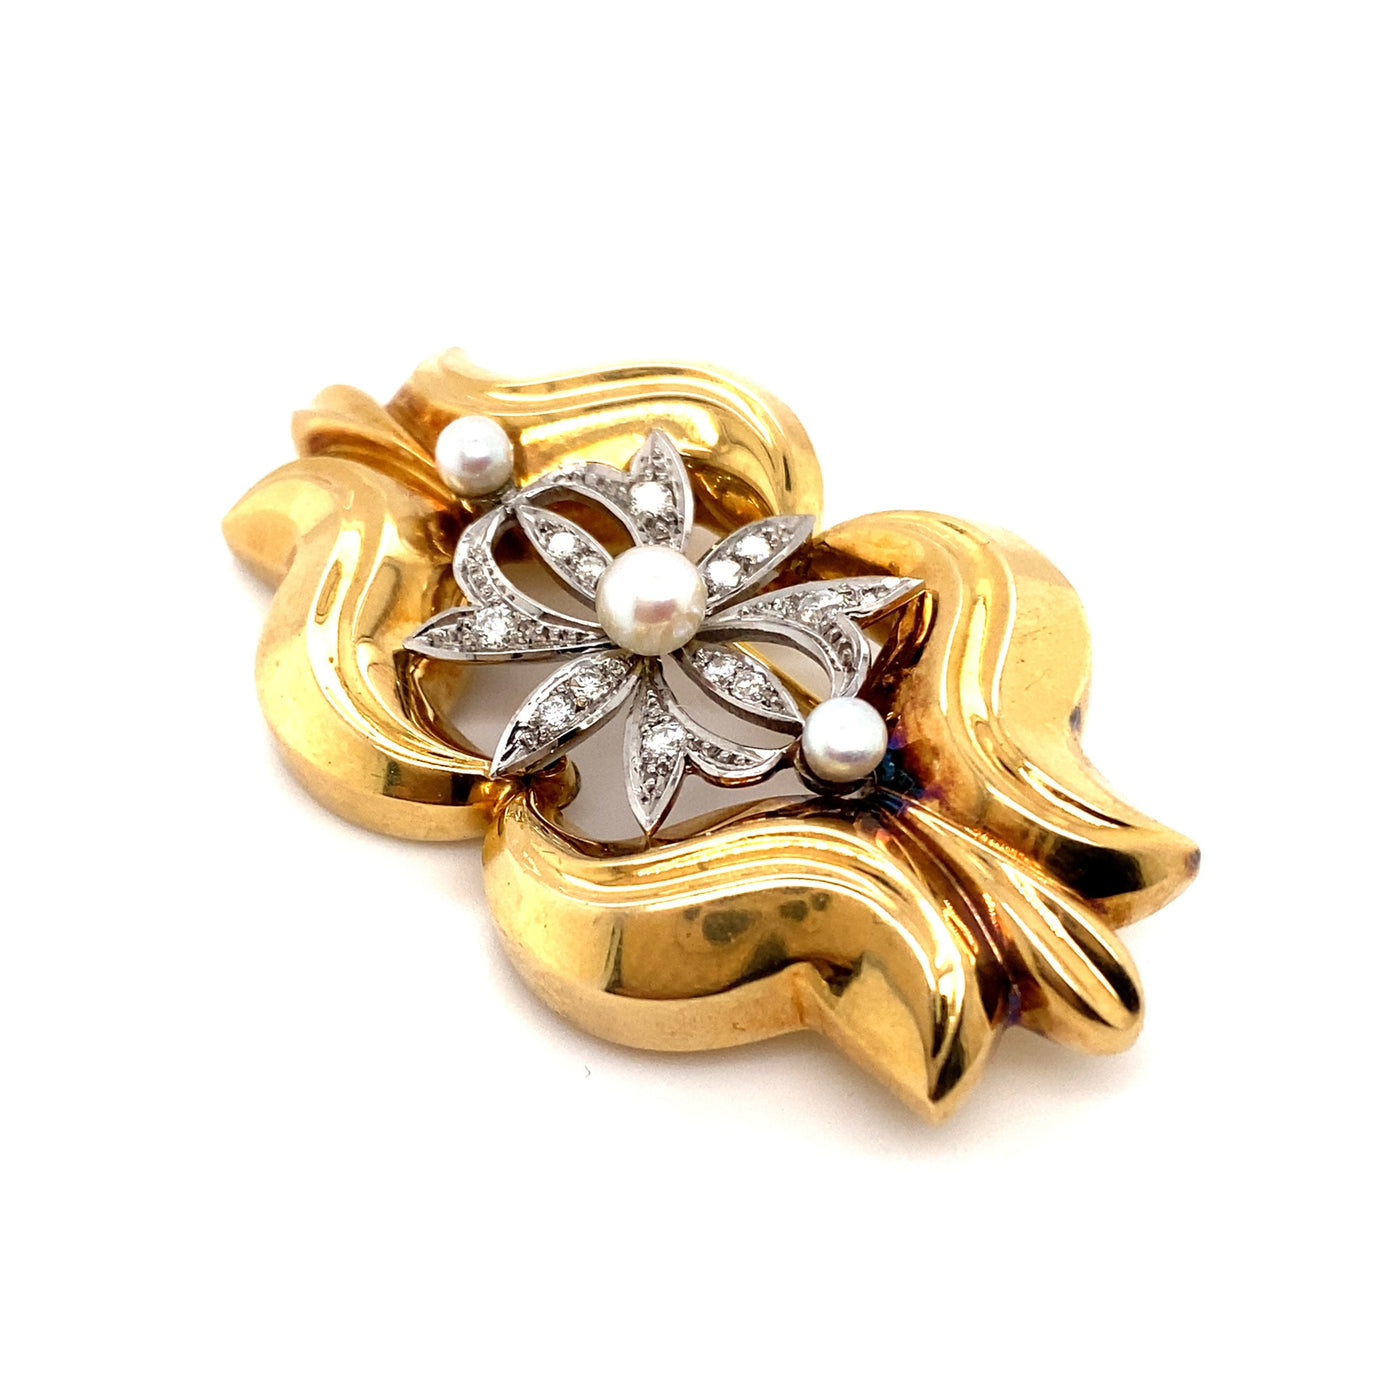 Goldbrosche Tricolor mit Diamanten und Perlen